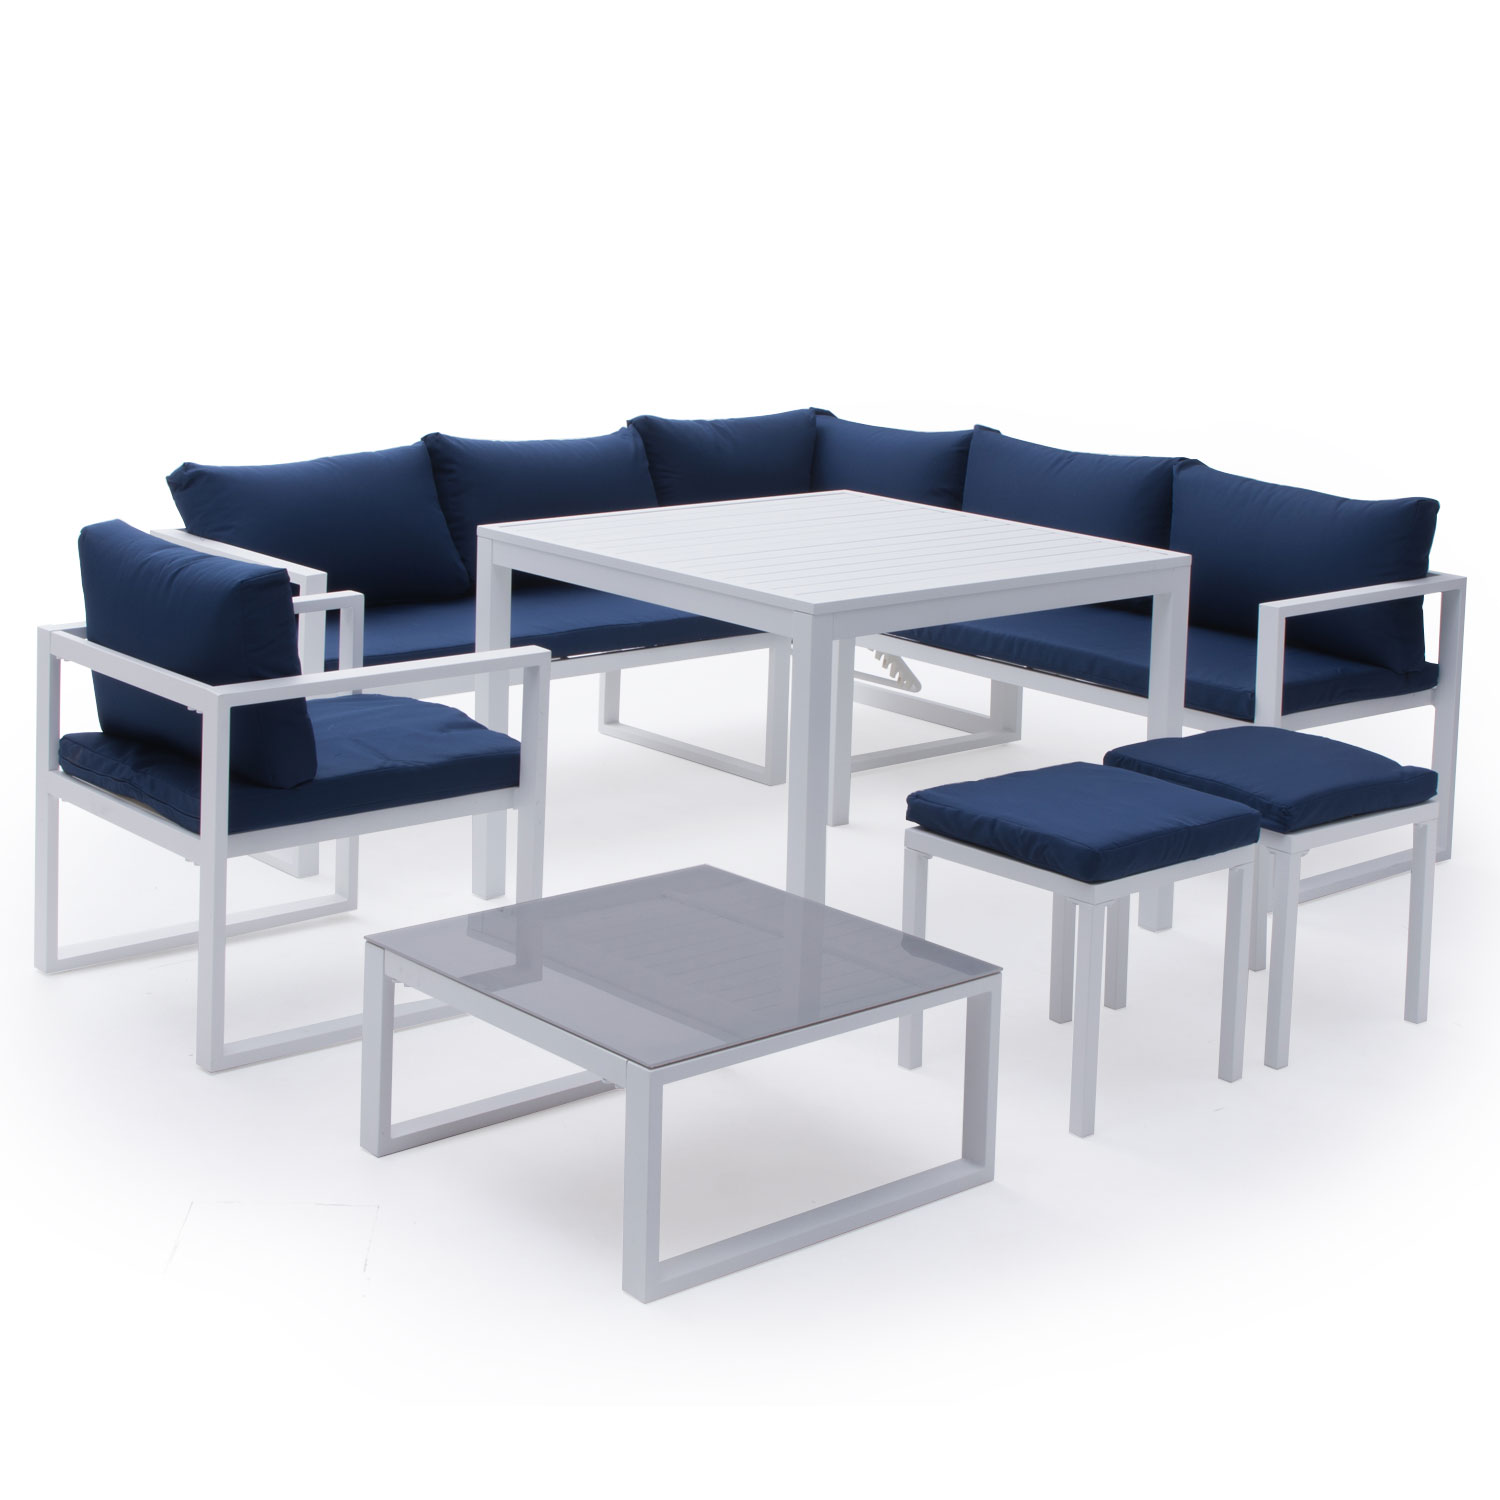 Set di mobili da giardino componibili IBIZA in tessuto blu, 7 posti a sedere - alluminio bianco